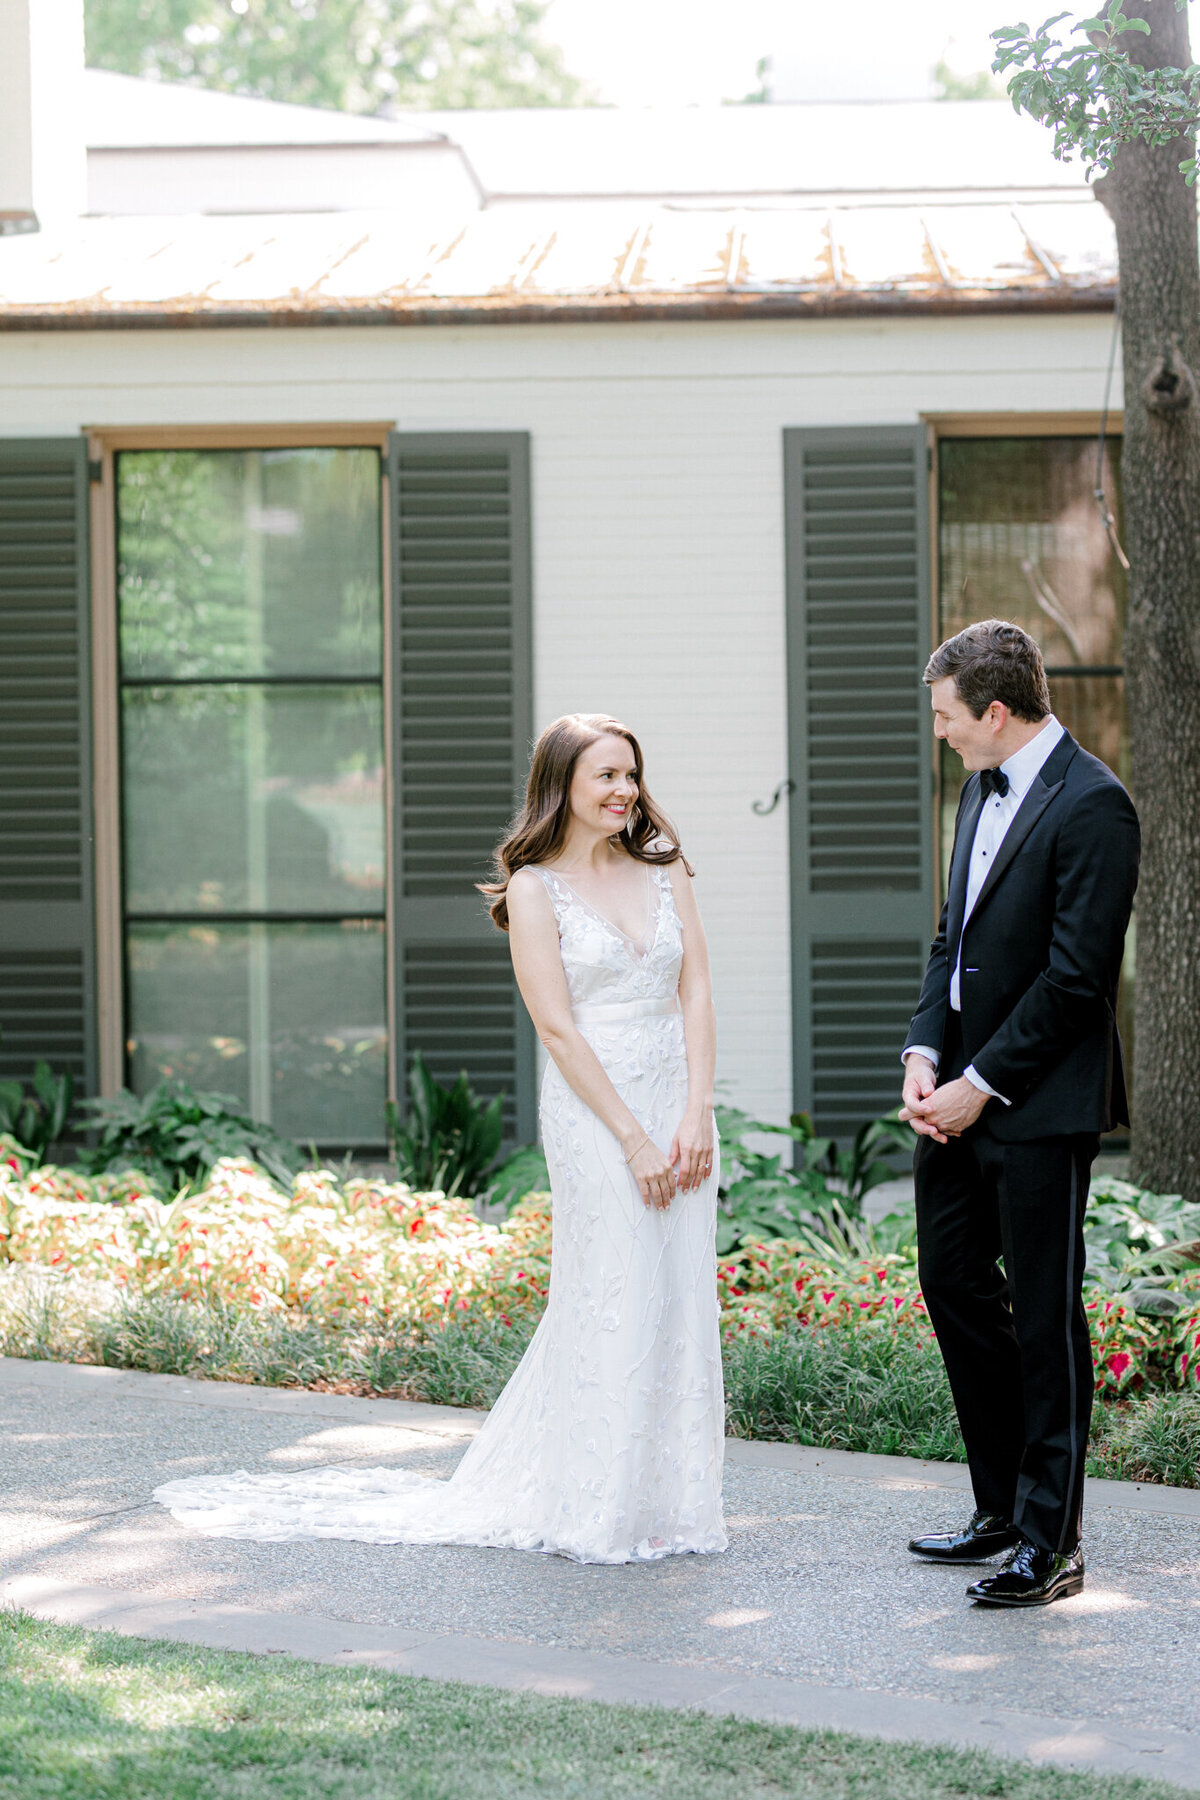 Gena & Matt's Wedding at the Dallas Arboretum | Dallas Wedding Photographer | Sami Kathryn Photography-65